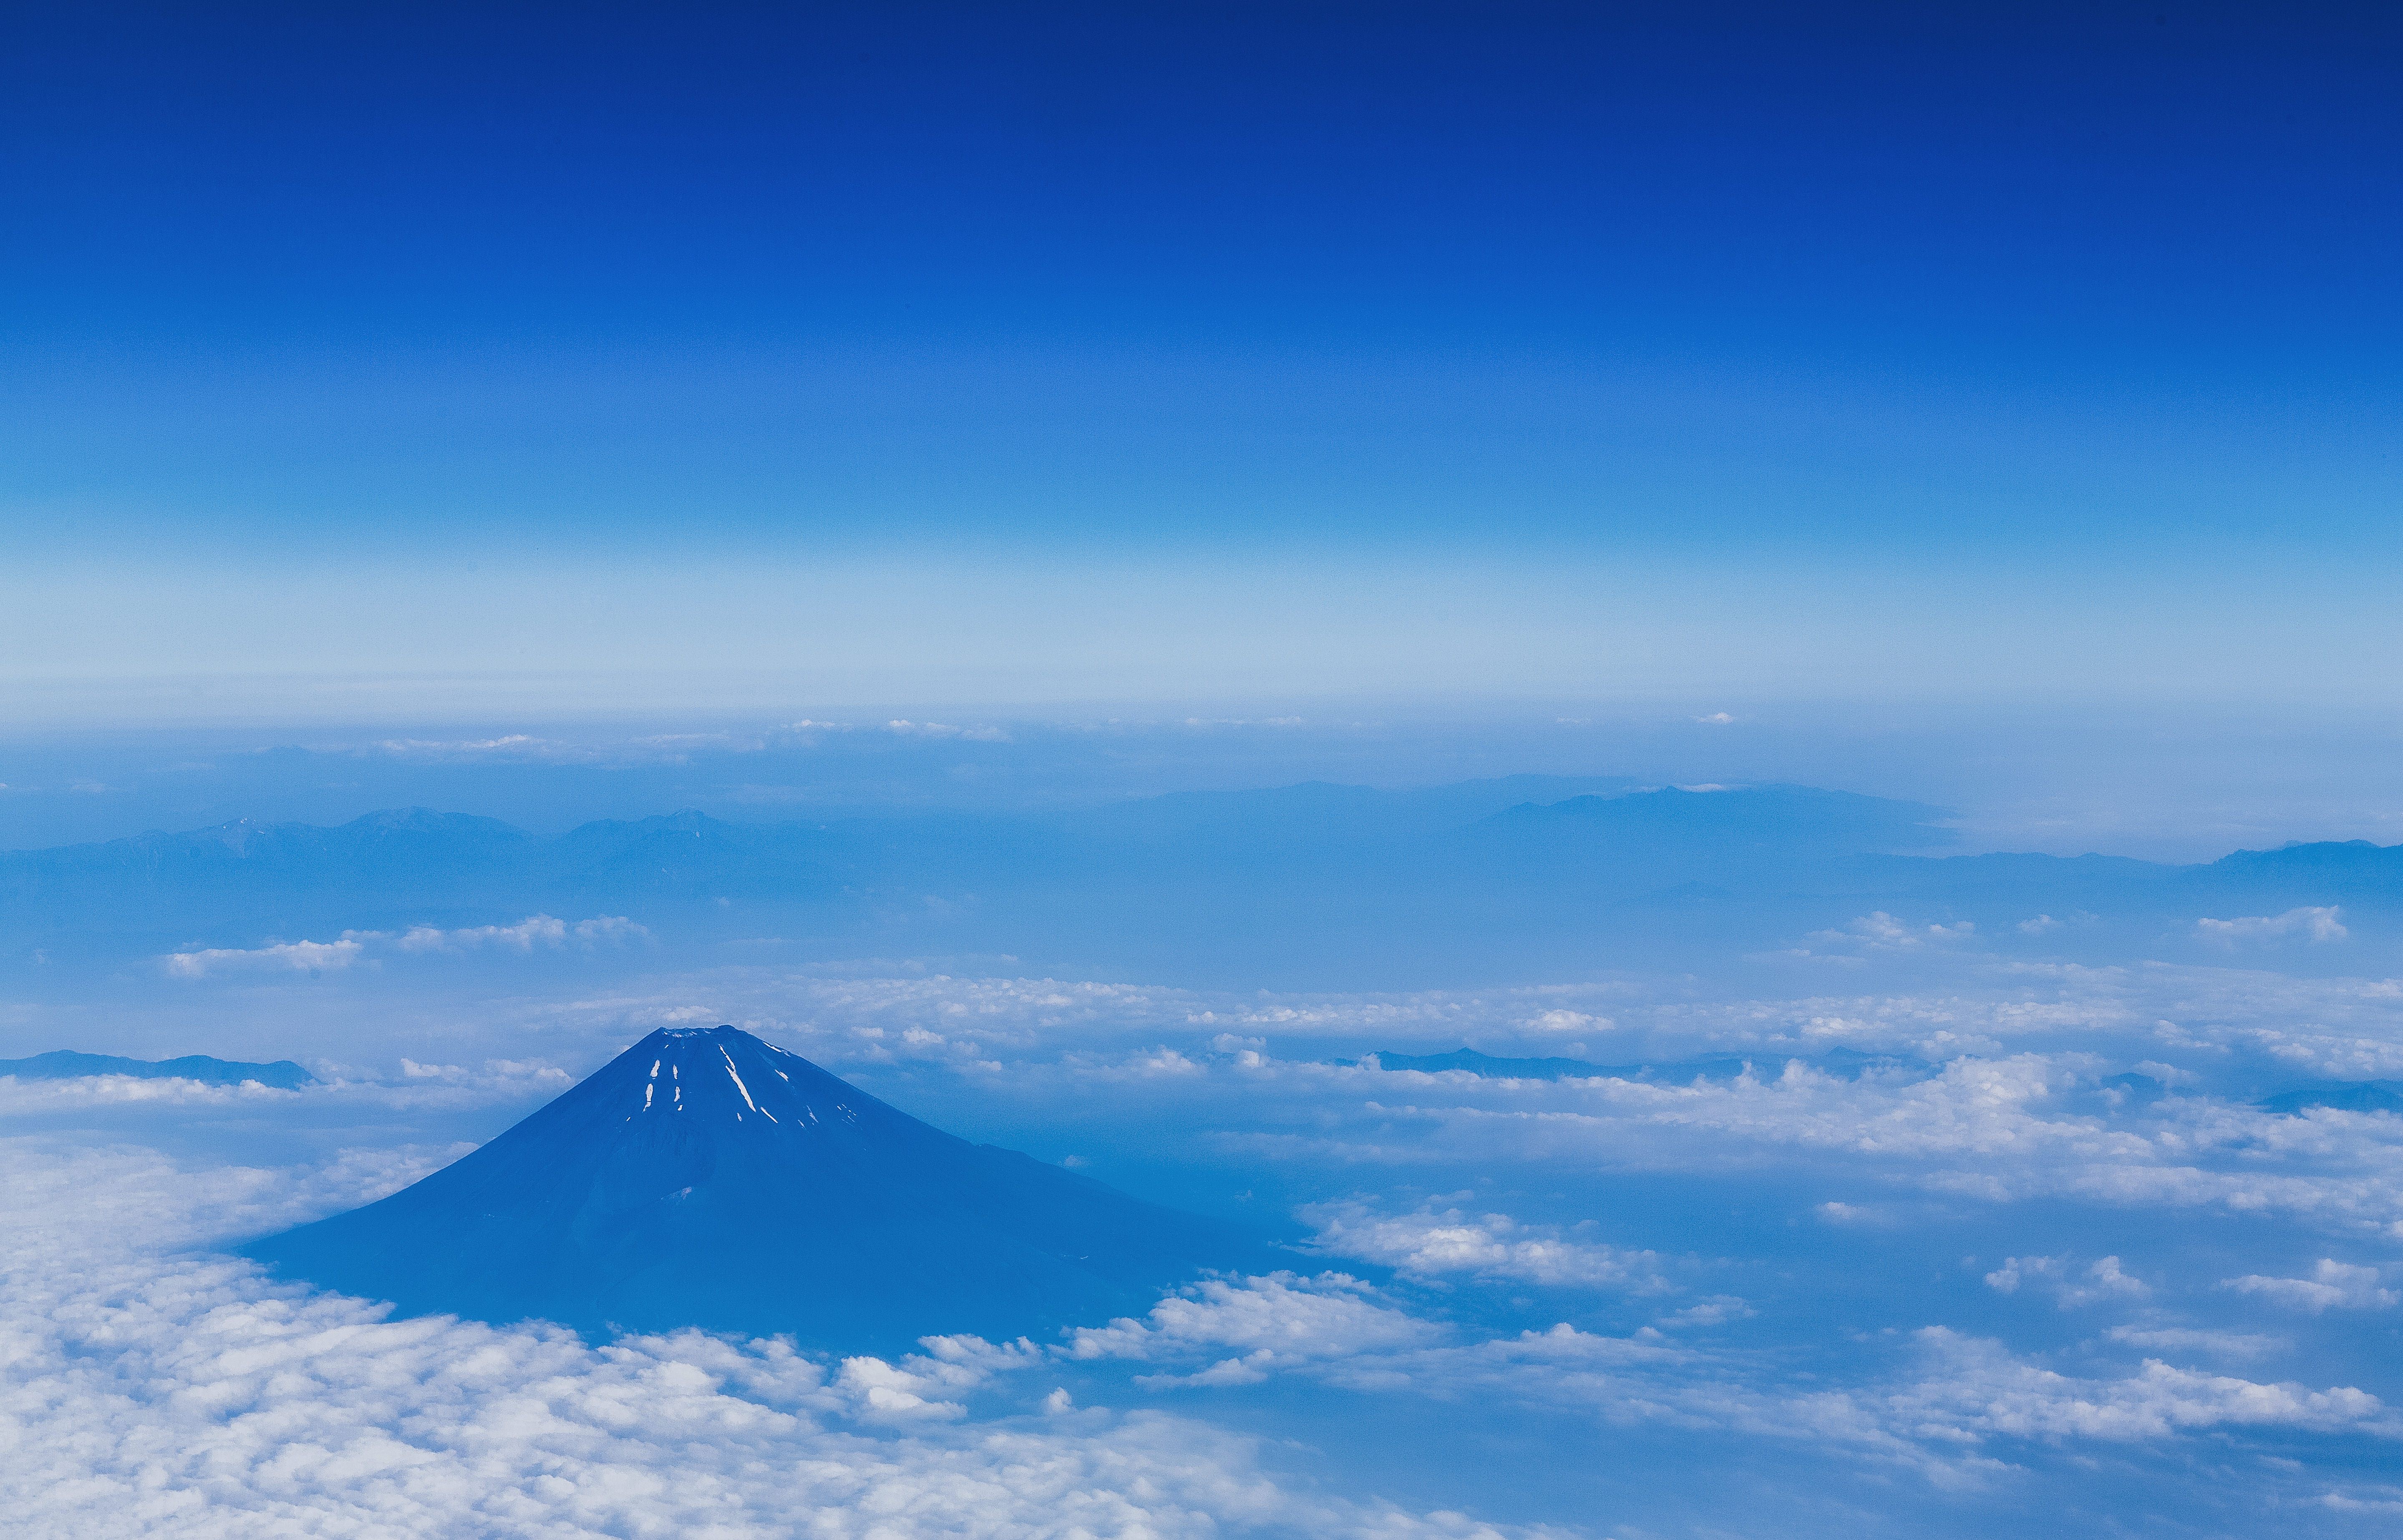 上空から雪解けの富士山 夏 の無料の写真素材 フリー素材 をダウンロード ぱくたそ